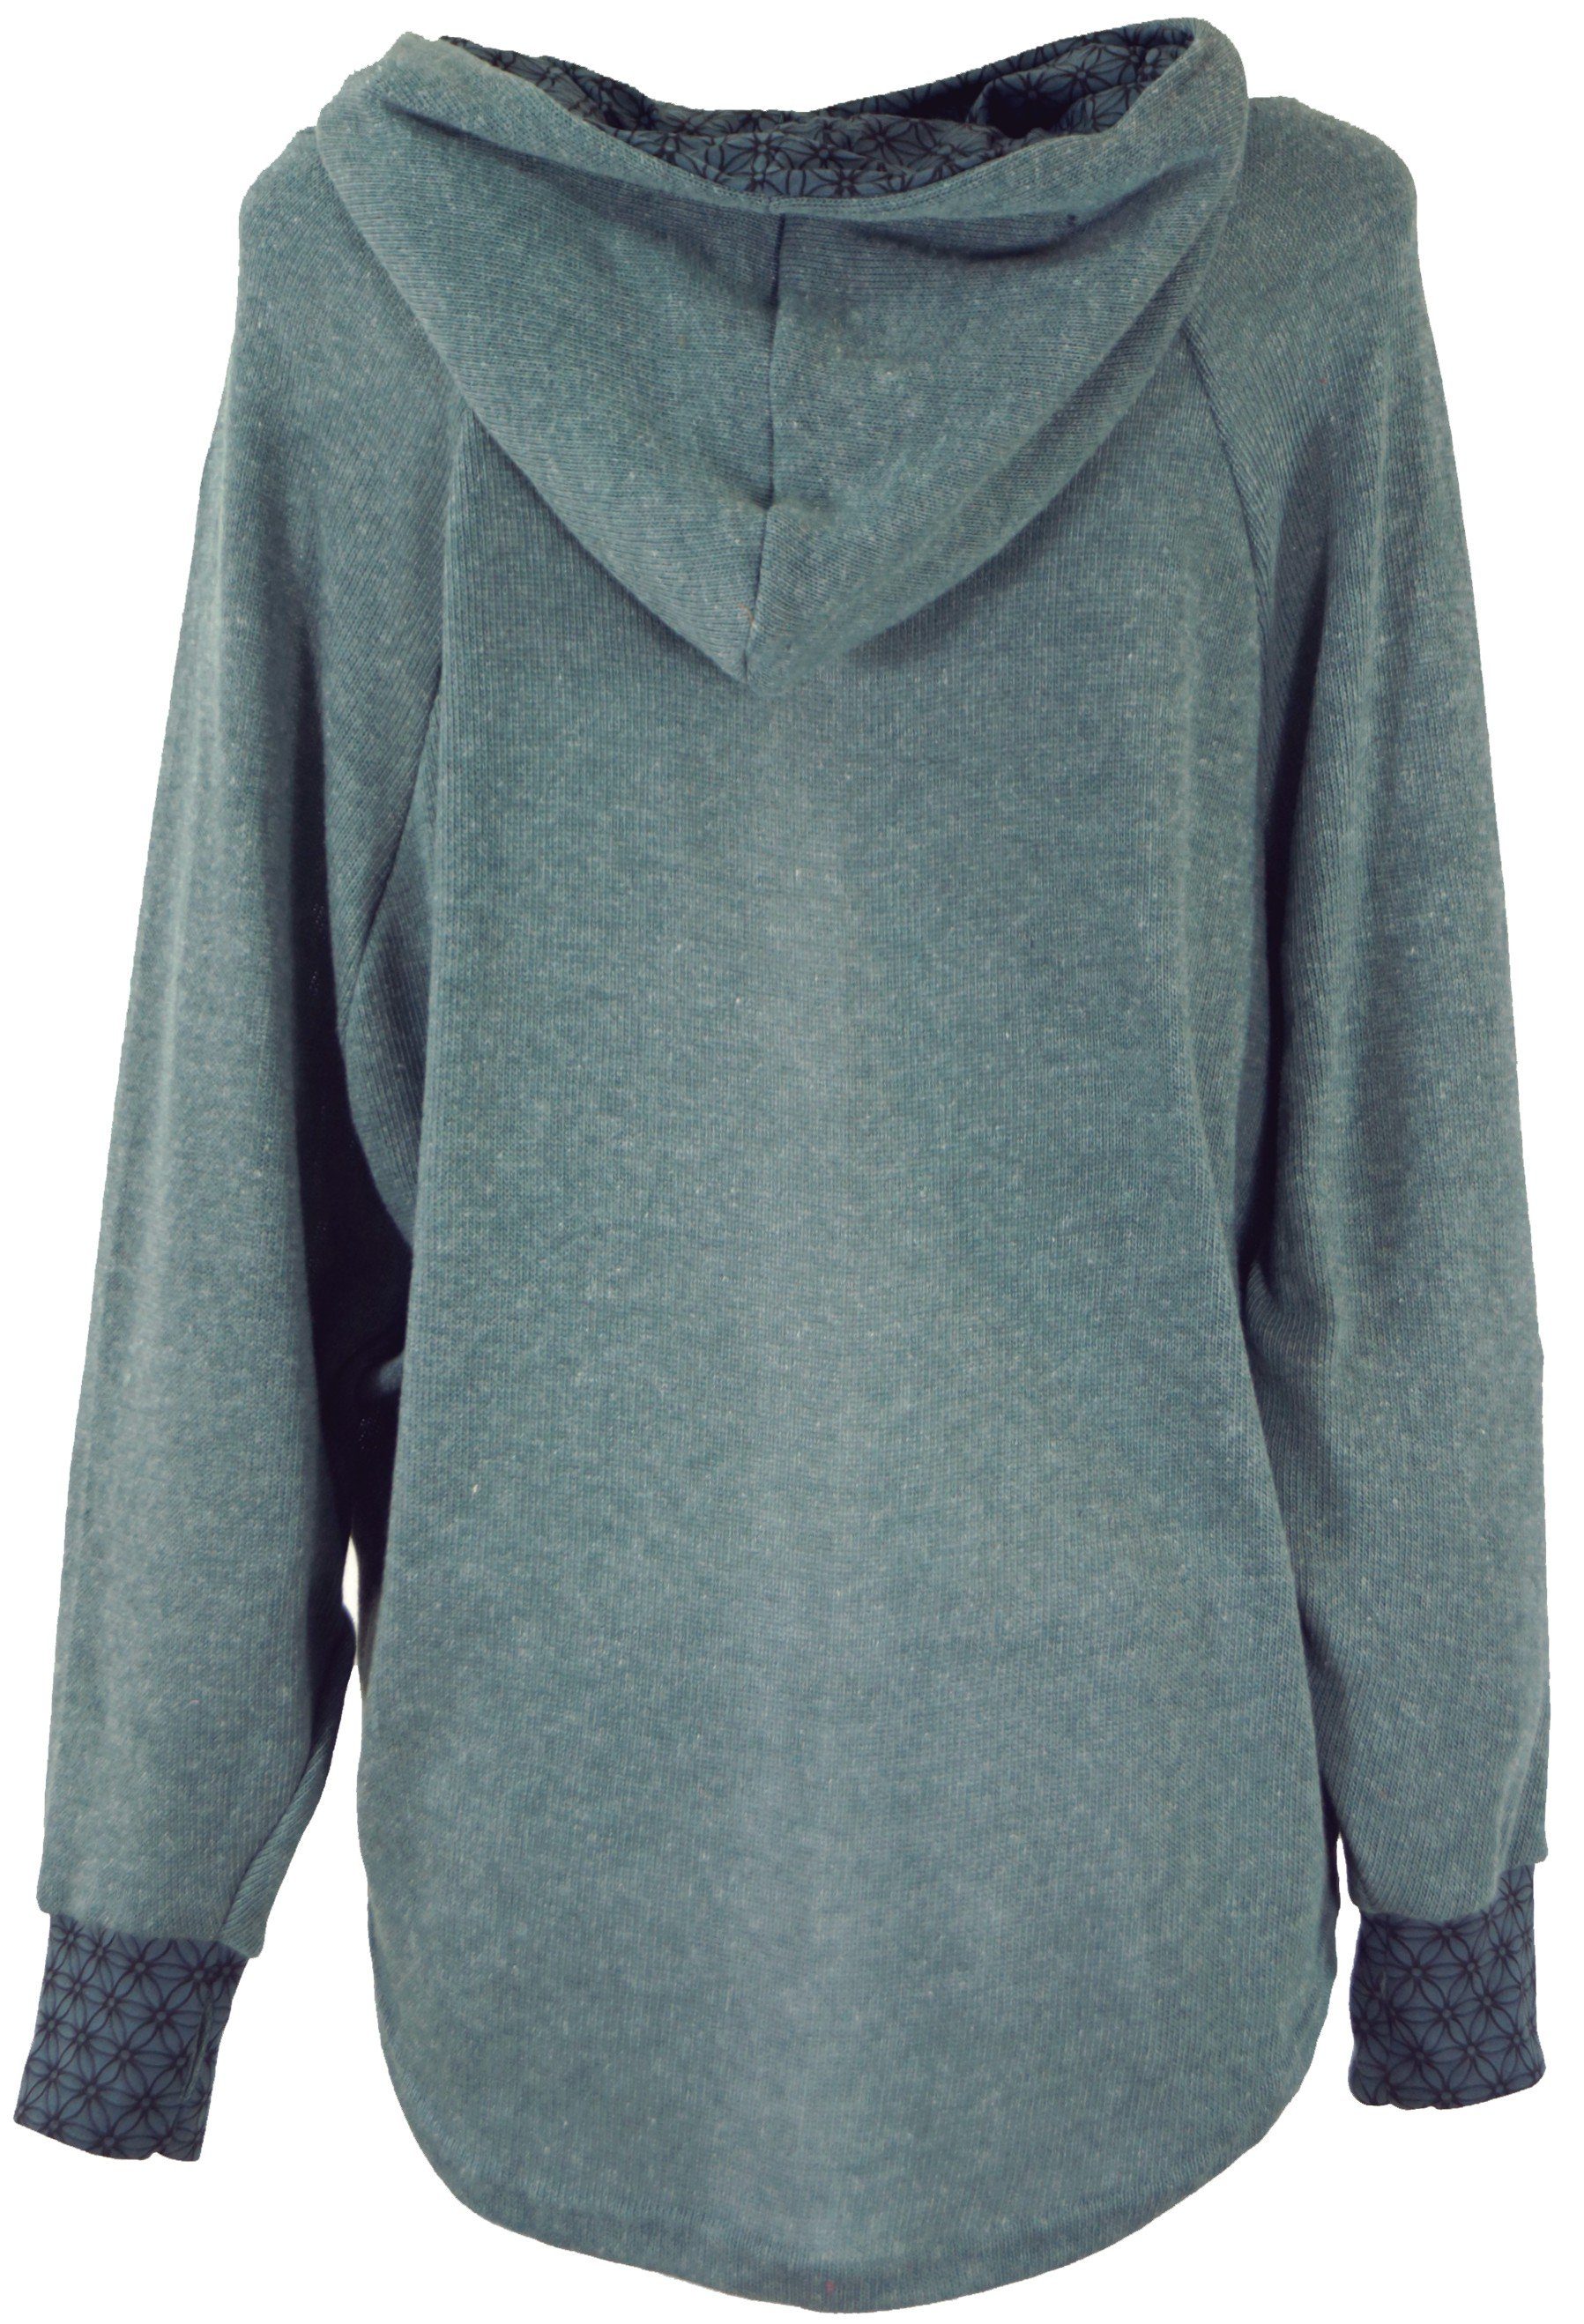 Pullover, taubenblau Sweatshirt, Kapuzenpullover Bekleidung Guru-Shop Hoody, alternative -.. Longsleeve